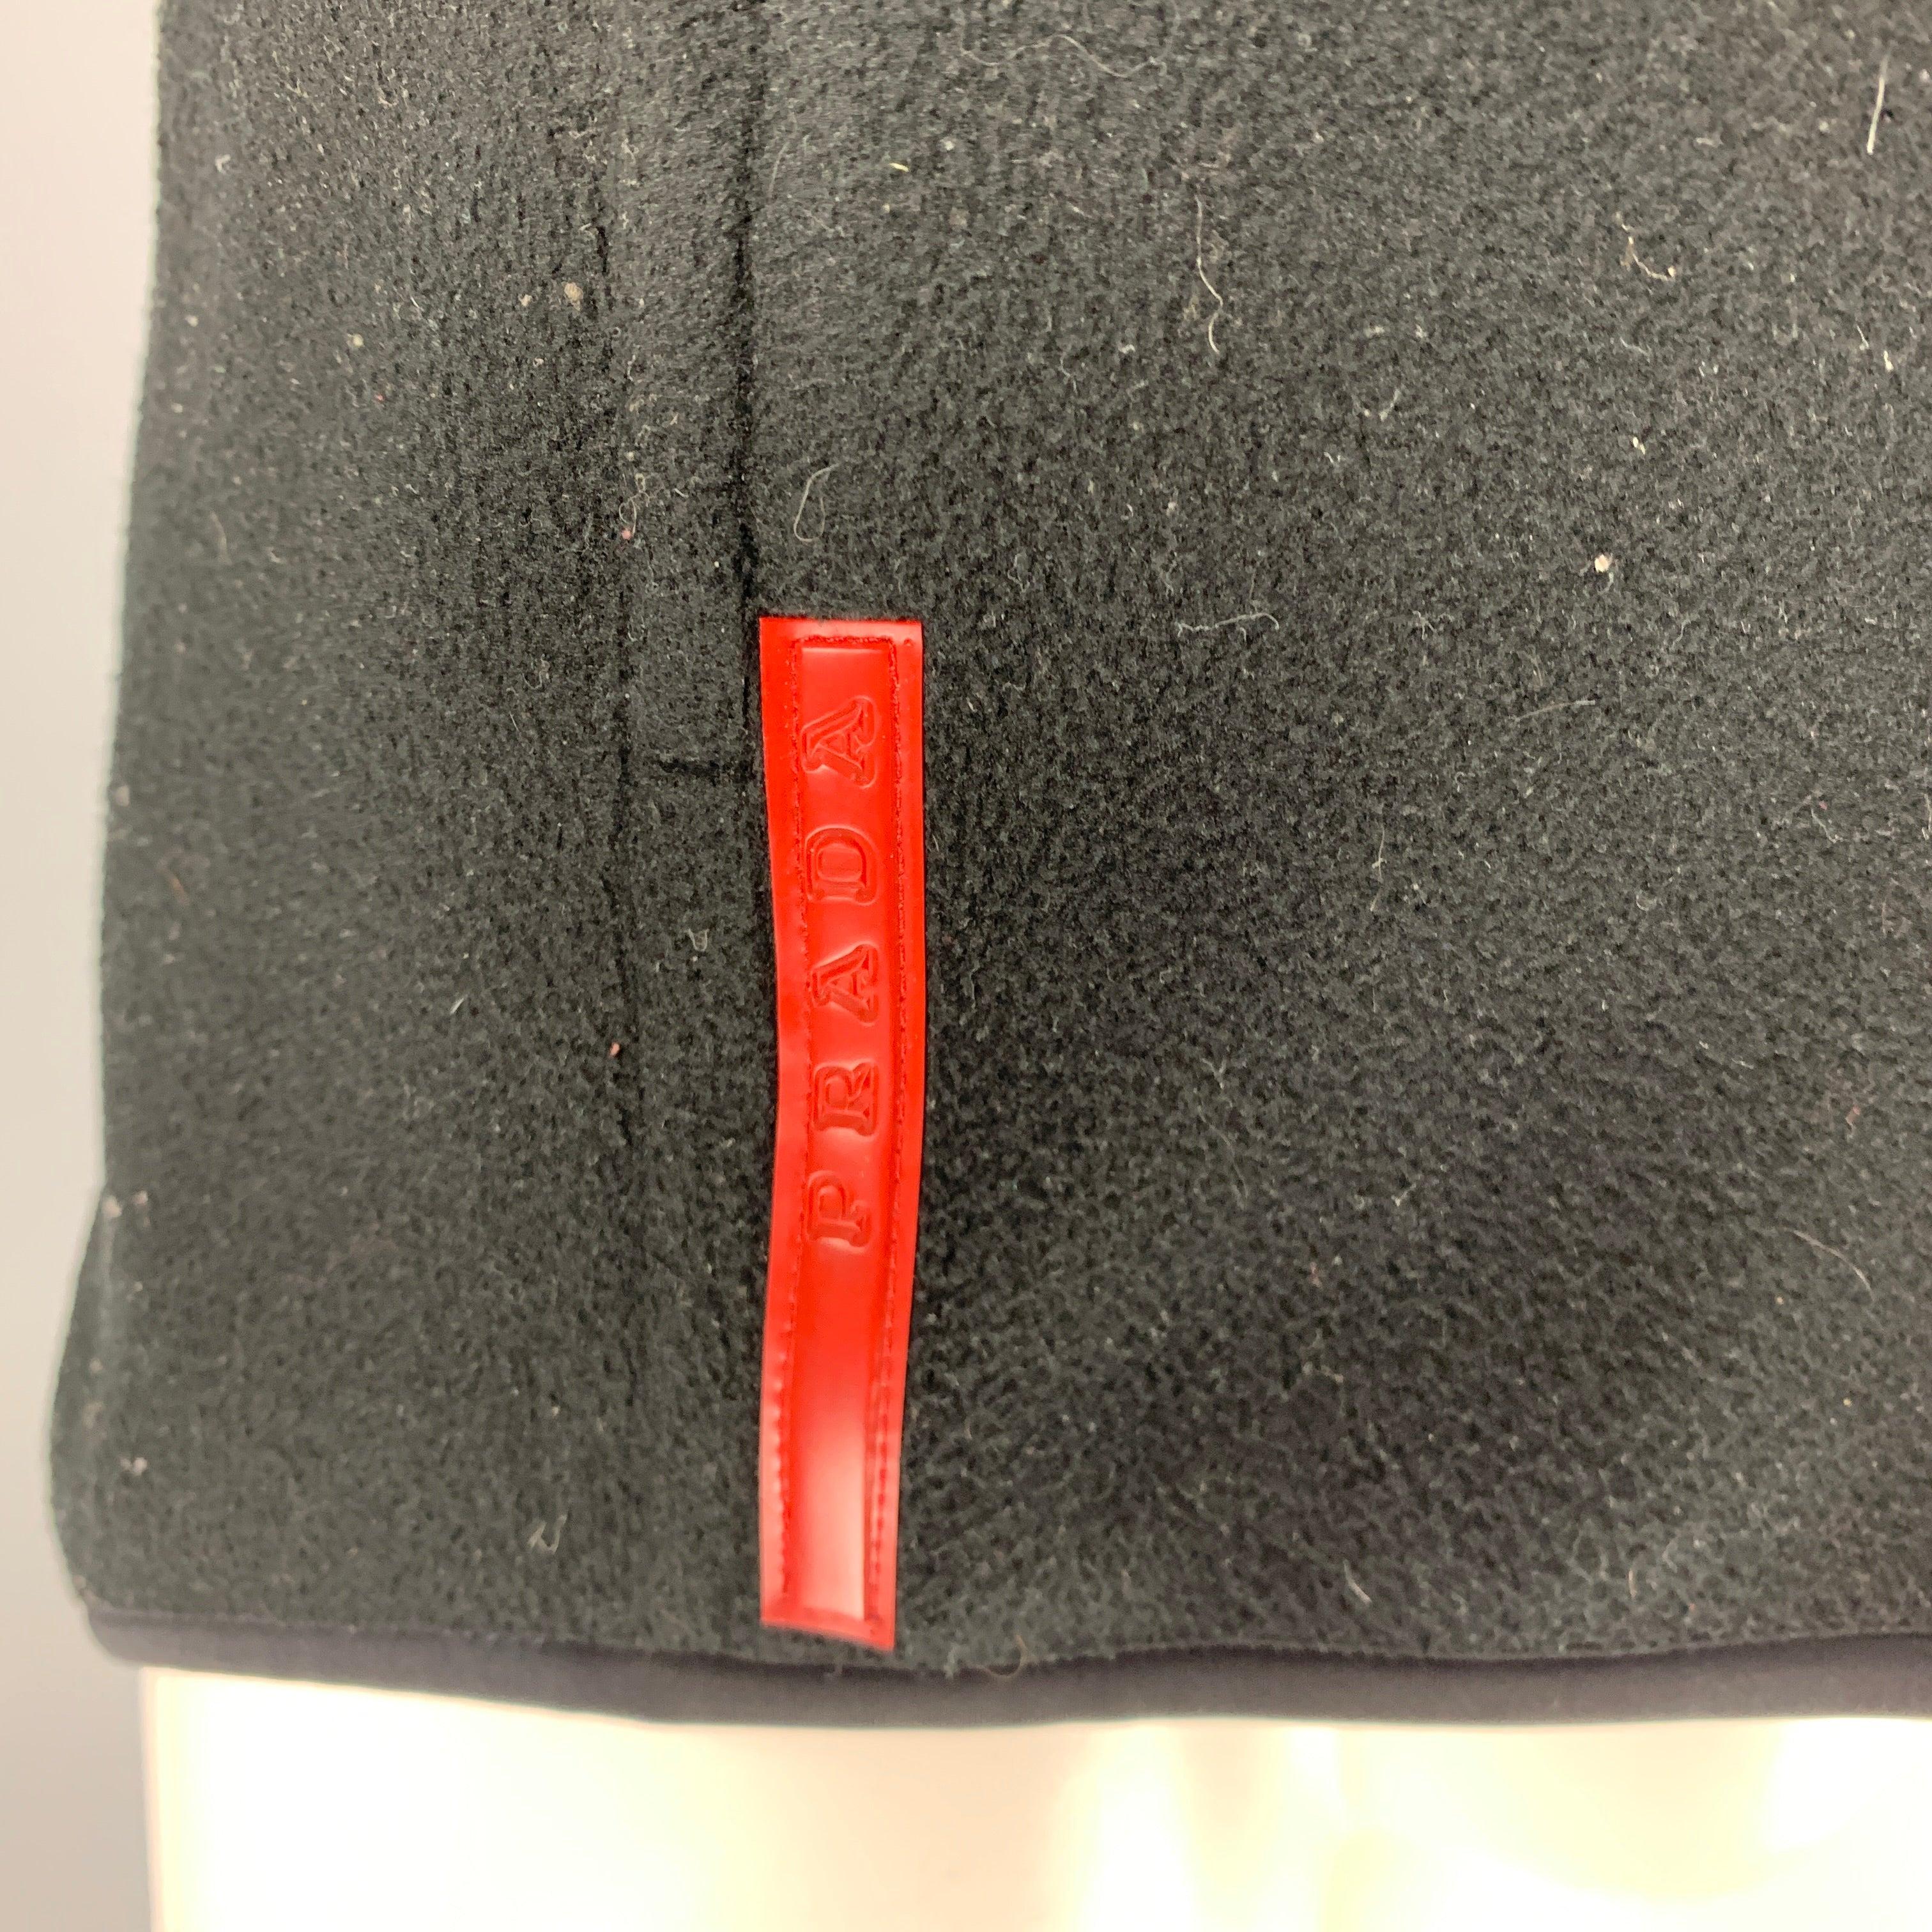 Gilet PRADA SPORT en molleton de polyester noir avec deux poches zippées, logo en caoutchouc et fermeture à glissière. Fabriqué en Italie. Très bon état. Signes mineurs d'usure. 

Marqué :   M 

Mesures : 
 
Épaule : 17.5 pouces Poitrine : 40 pouces